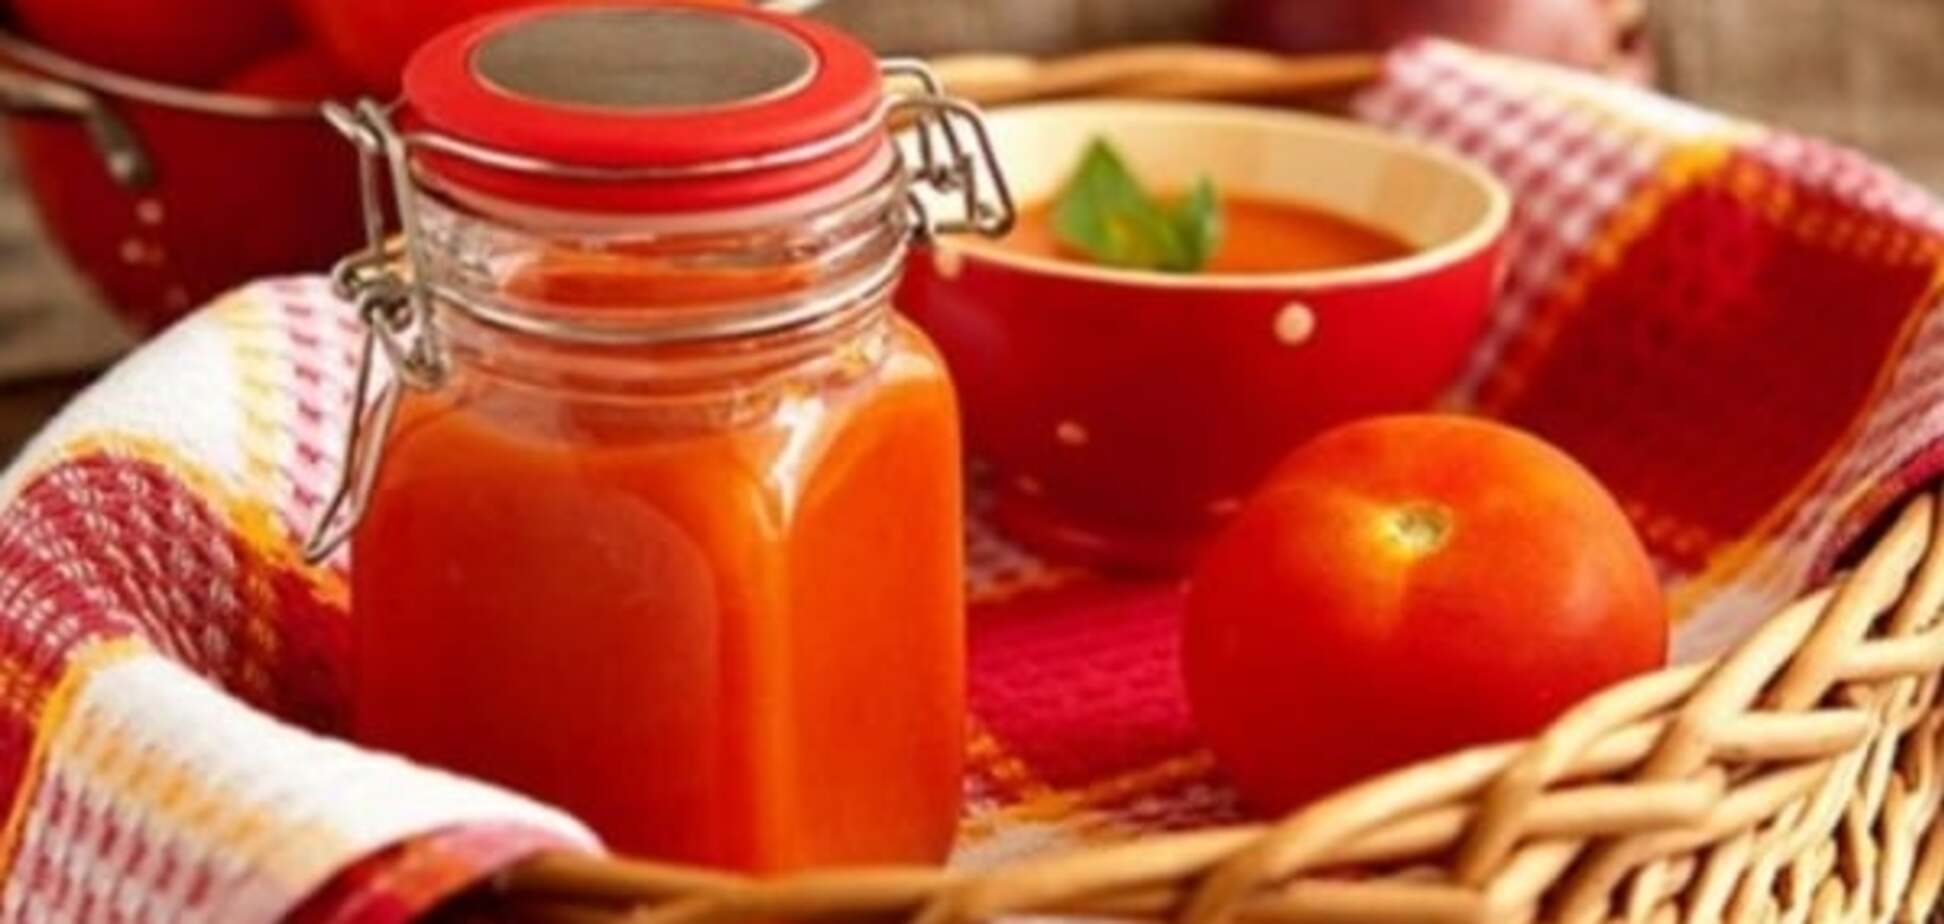 Эксперты заявили, что кетчуп и газировка могут спровоцировать рак 